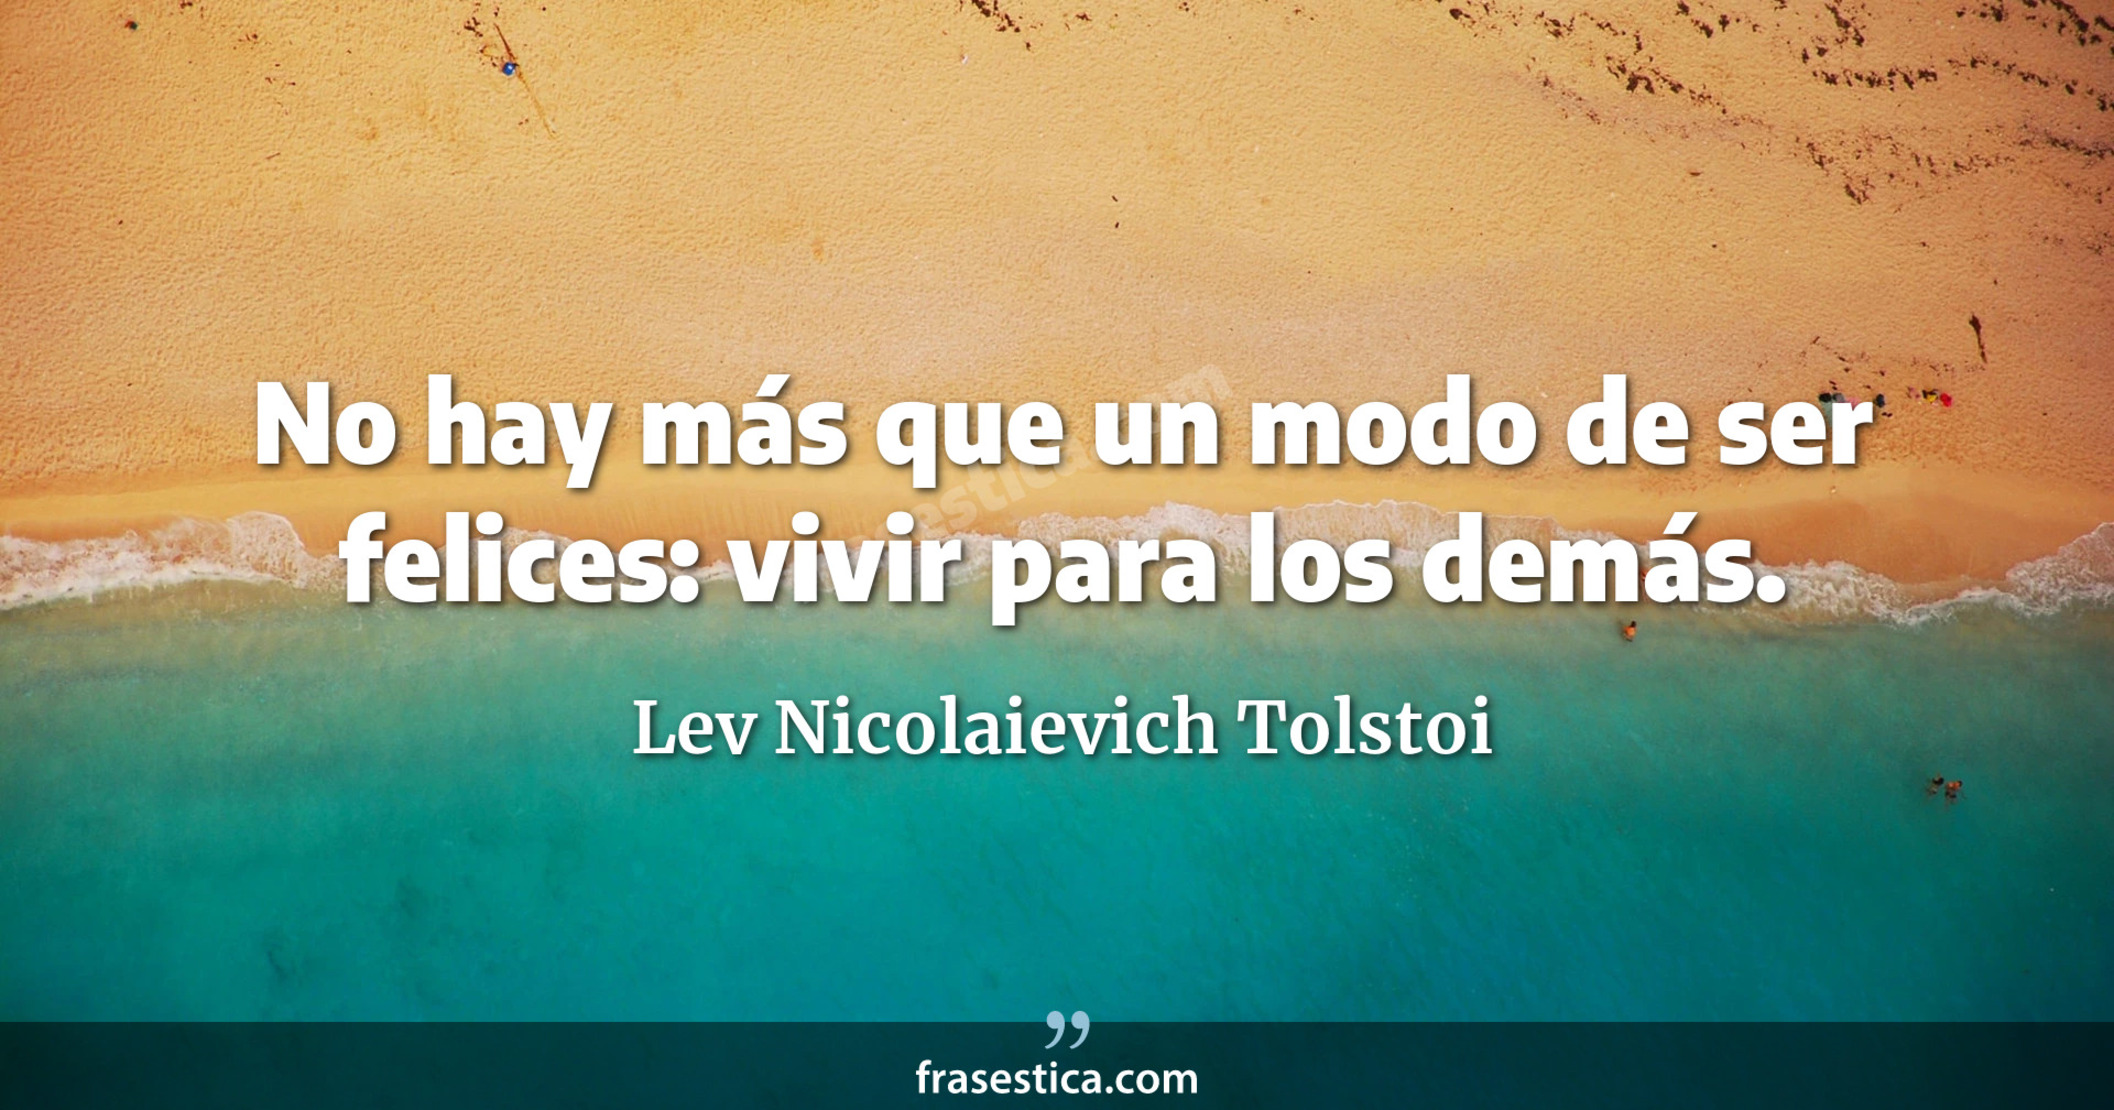 No hay más que un modo de ser felices: vivir para los demás. - Lev Nicolaievich Tolstoi